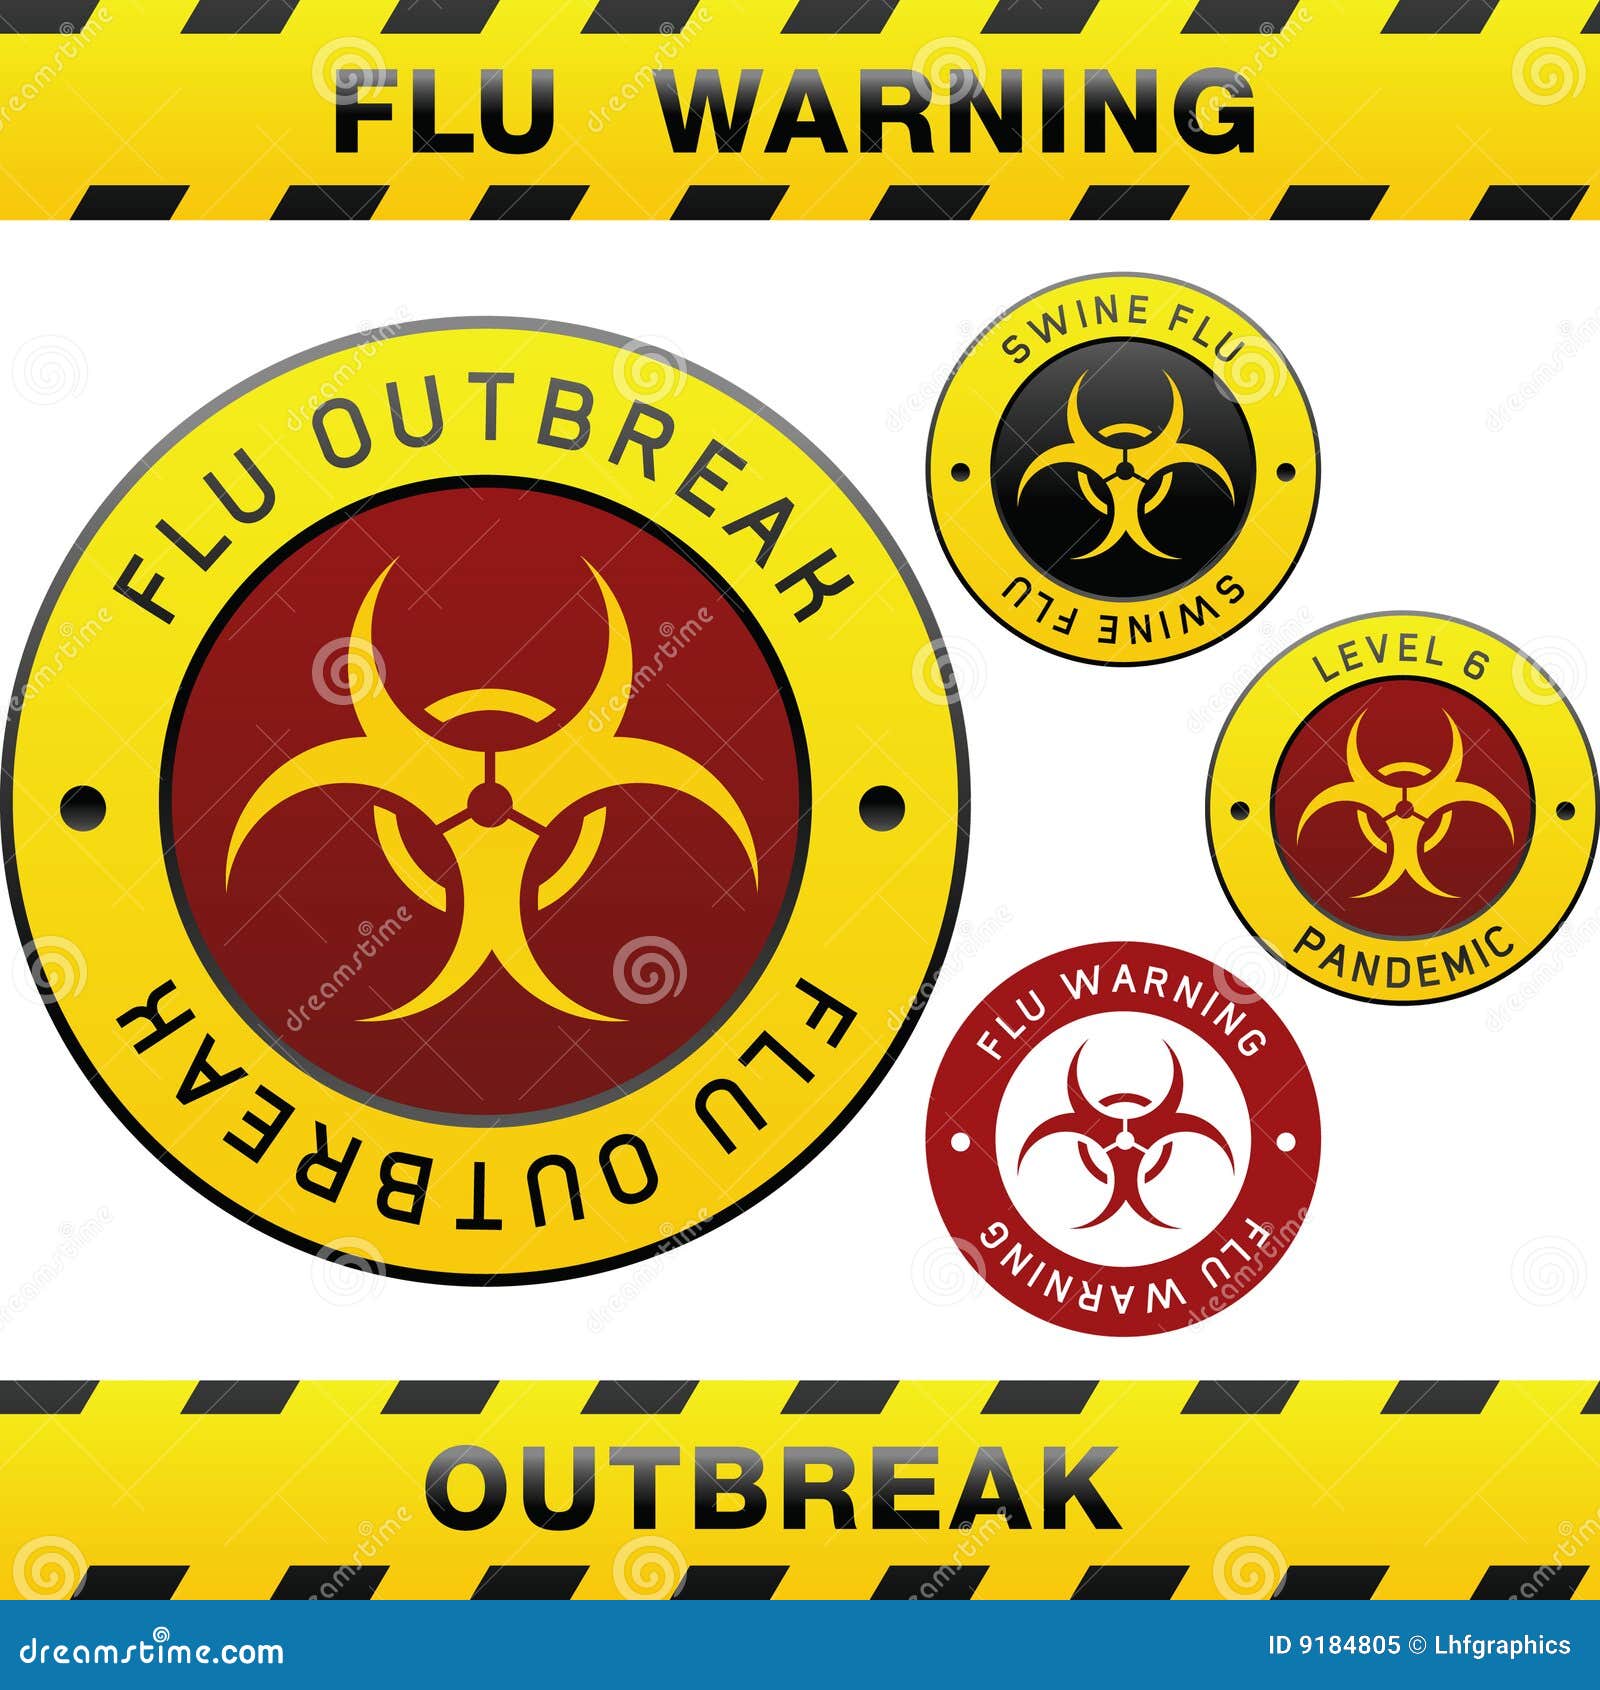 swine flu outbreak warning  s